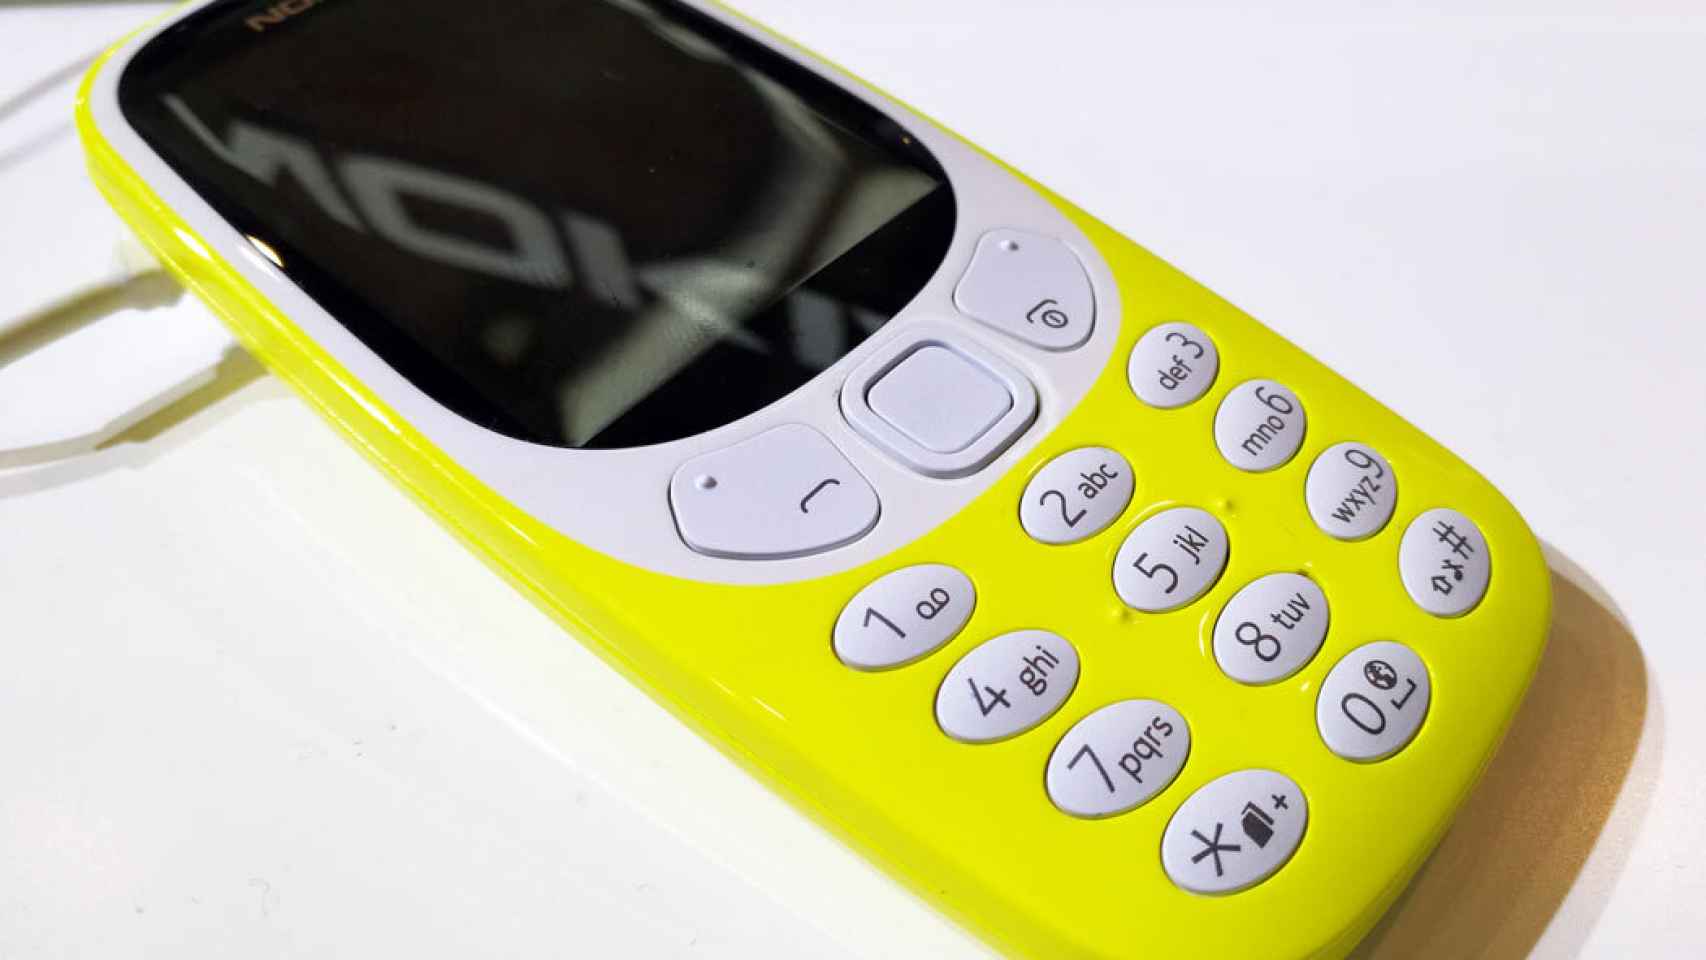 El Nokia 3310 estrena versión con 3G, pero tampoco sirve de mucho